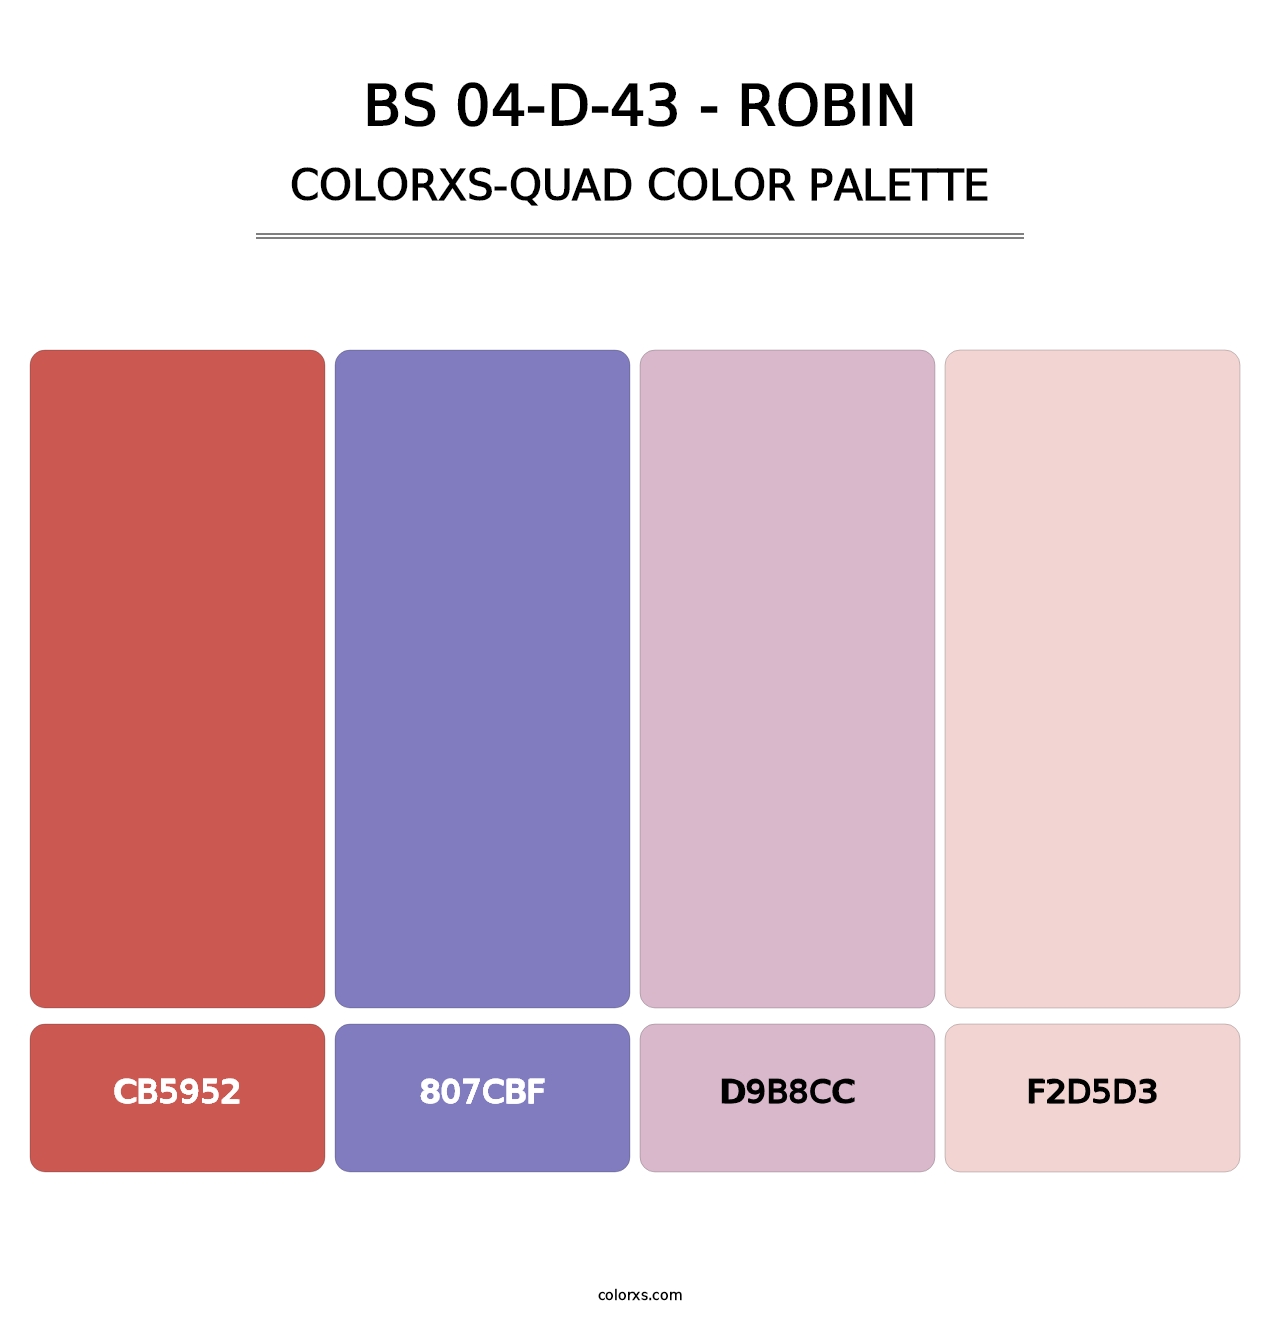 BS 04-D-43 - Robin - Colorxs Quad Palette